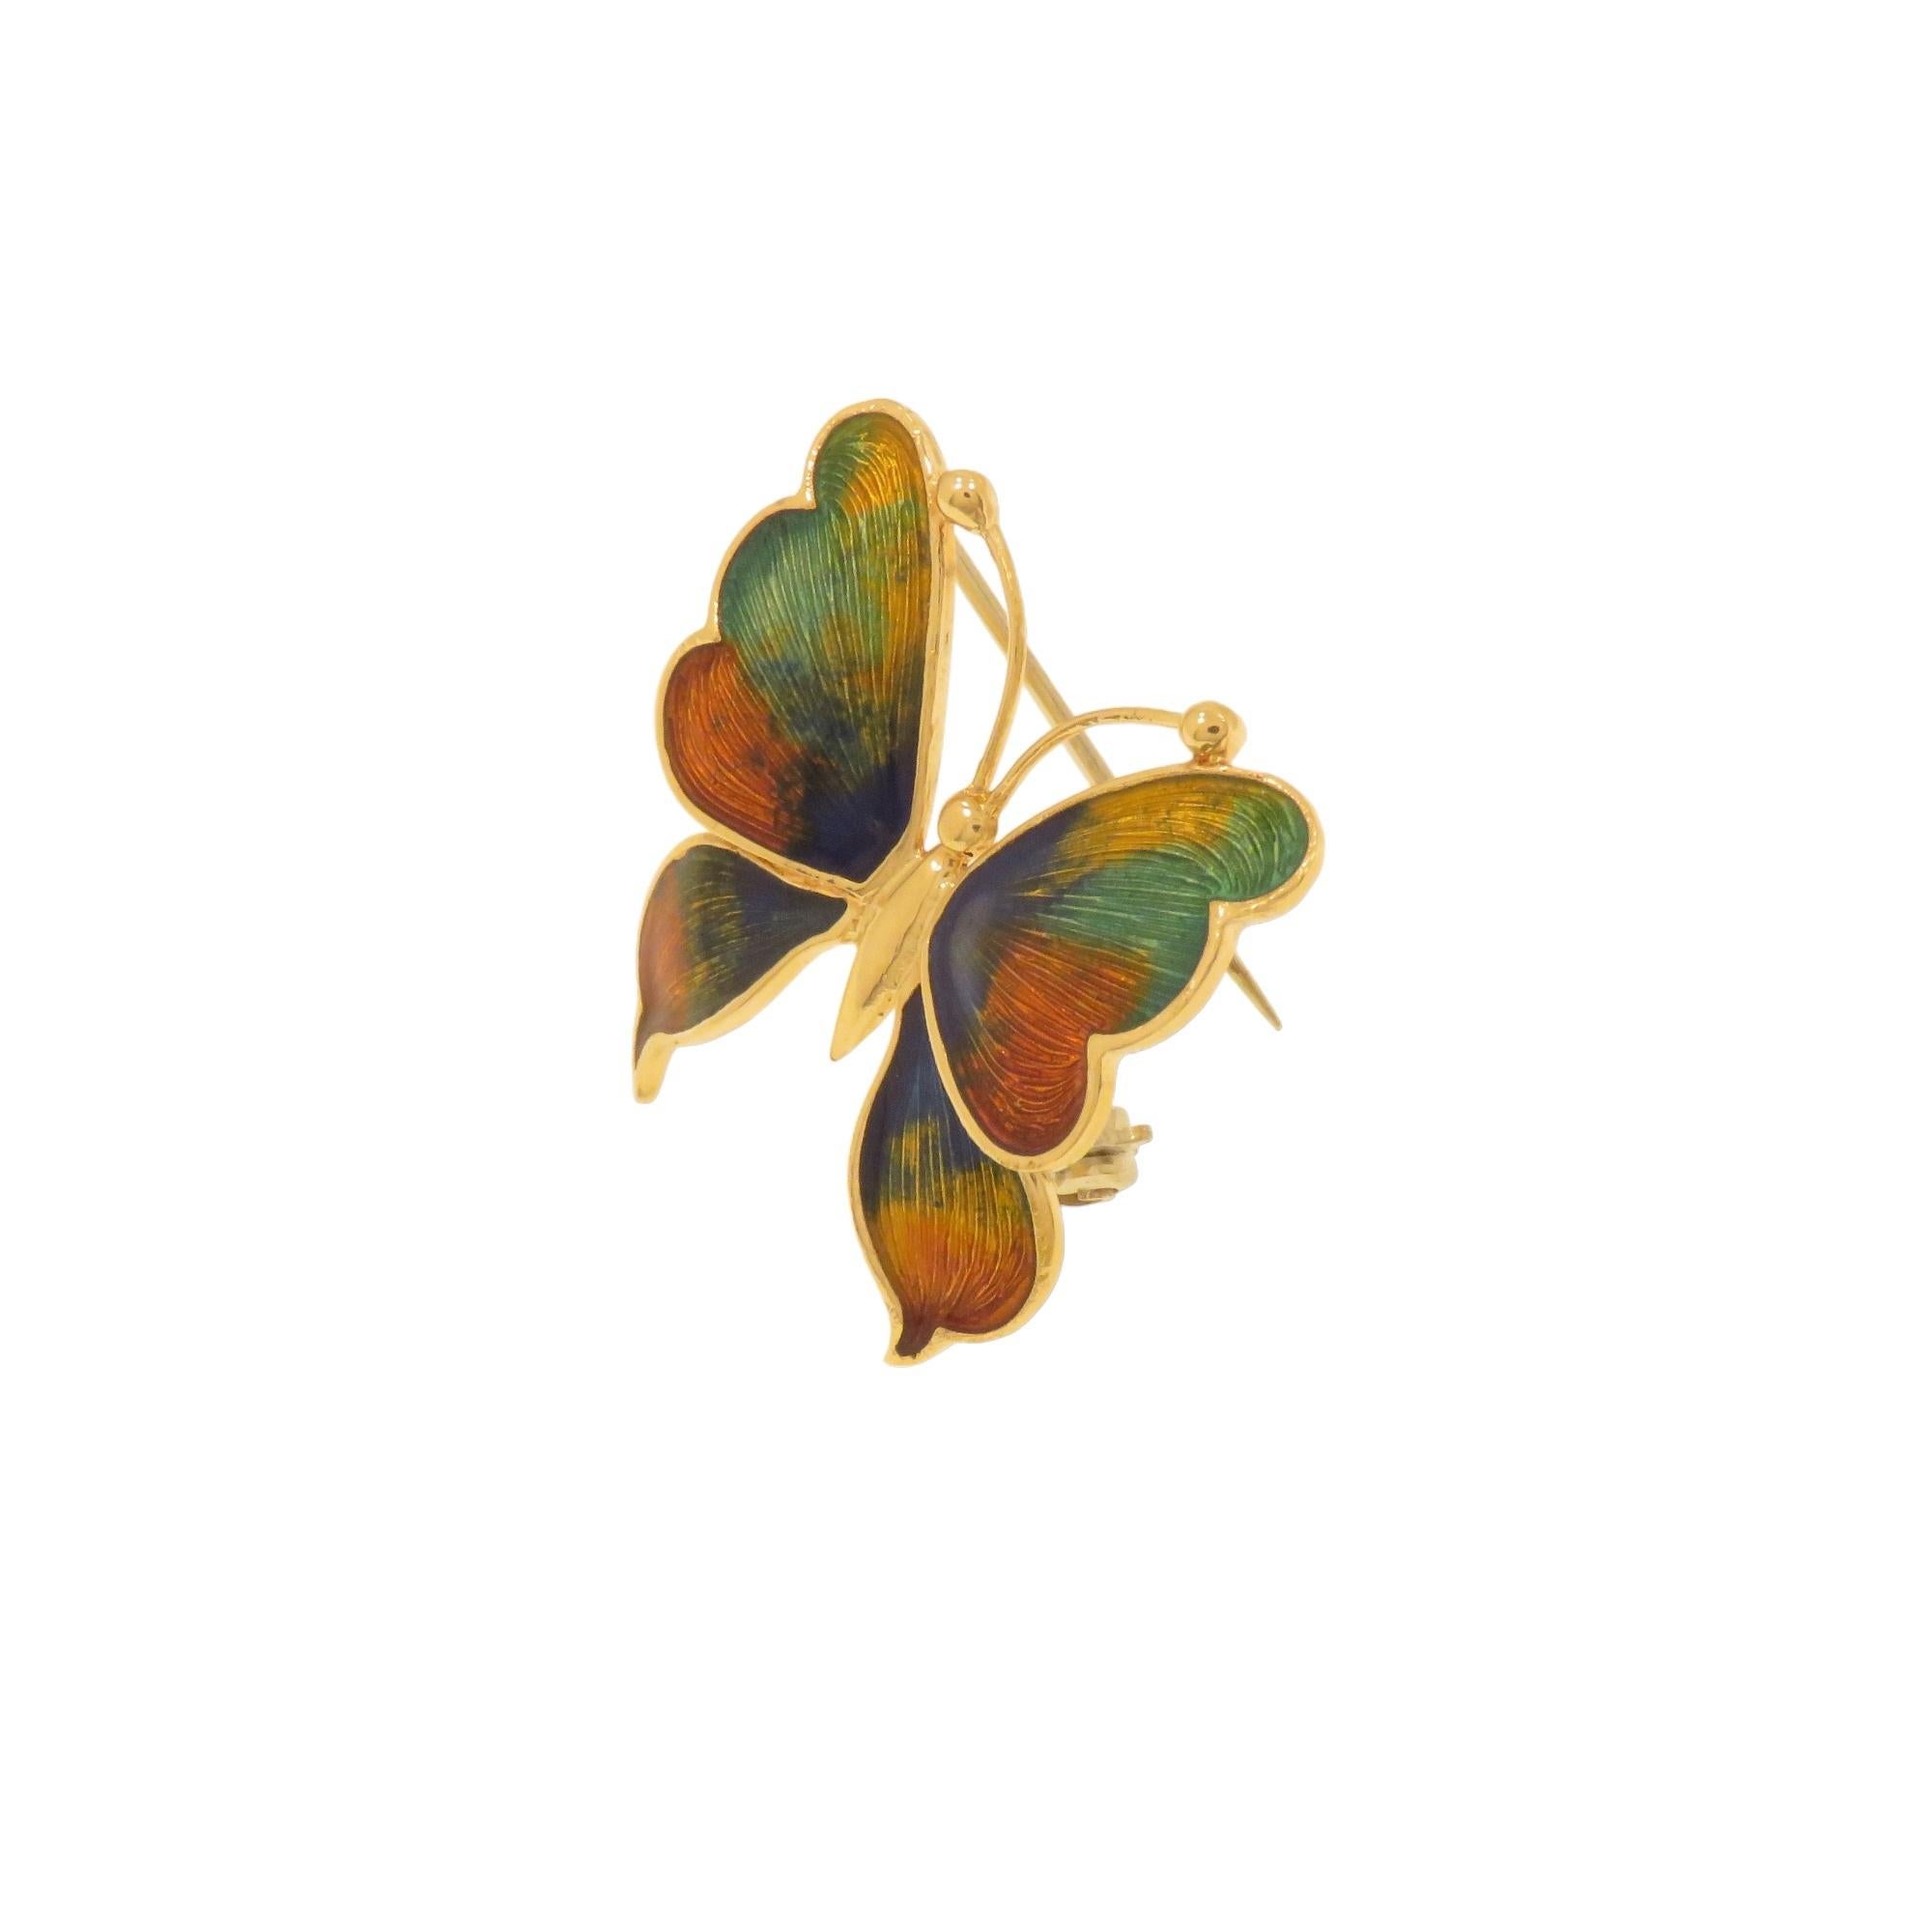 Jolie broche vintage papillon en émail or jaune 18 carats dans les tons bleu, orange, vert et jaune. La taille est de 27X28mm / 1.062x1.102 pouces. L'émail est parfait et l'épingle est droite. Elle se ferme avec un fermoir de sécurité. Marqué de la